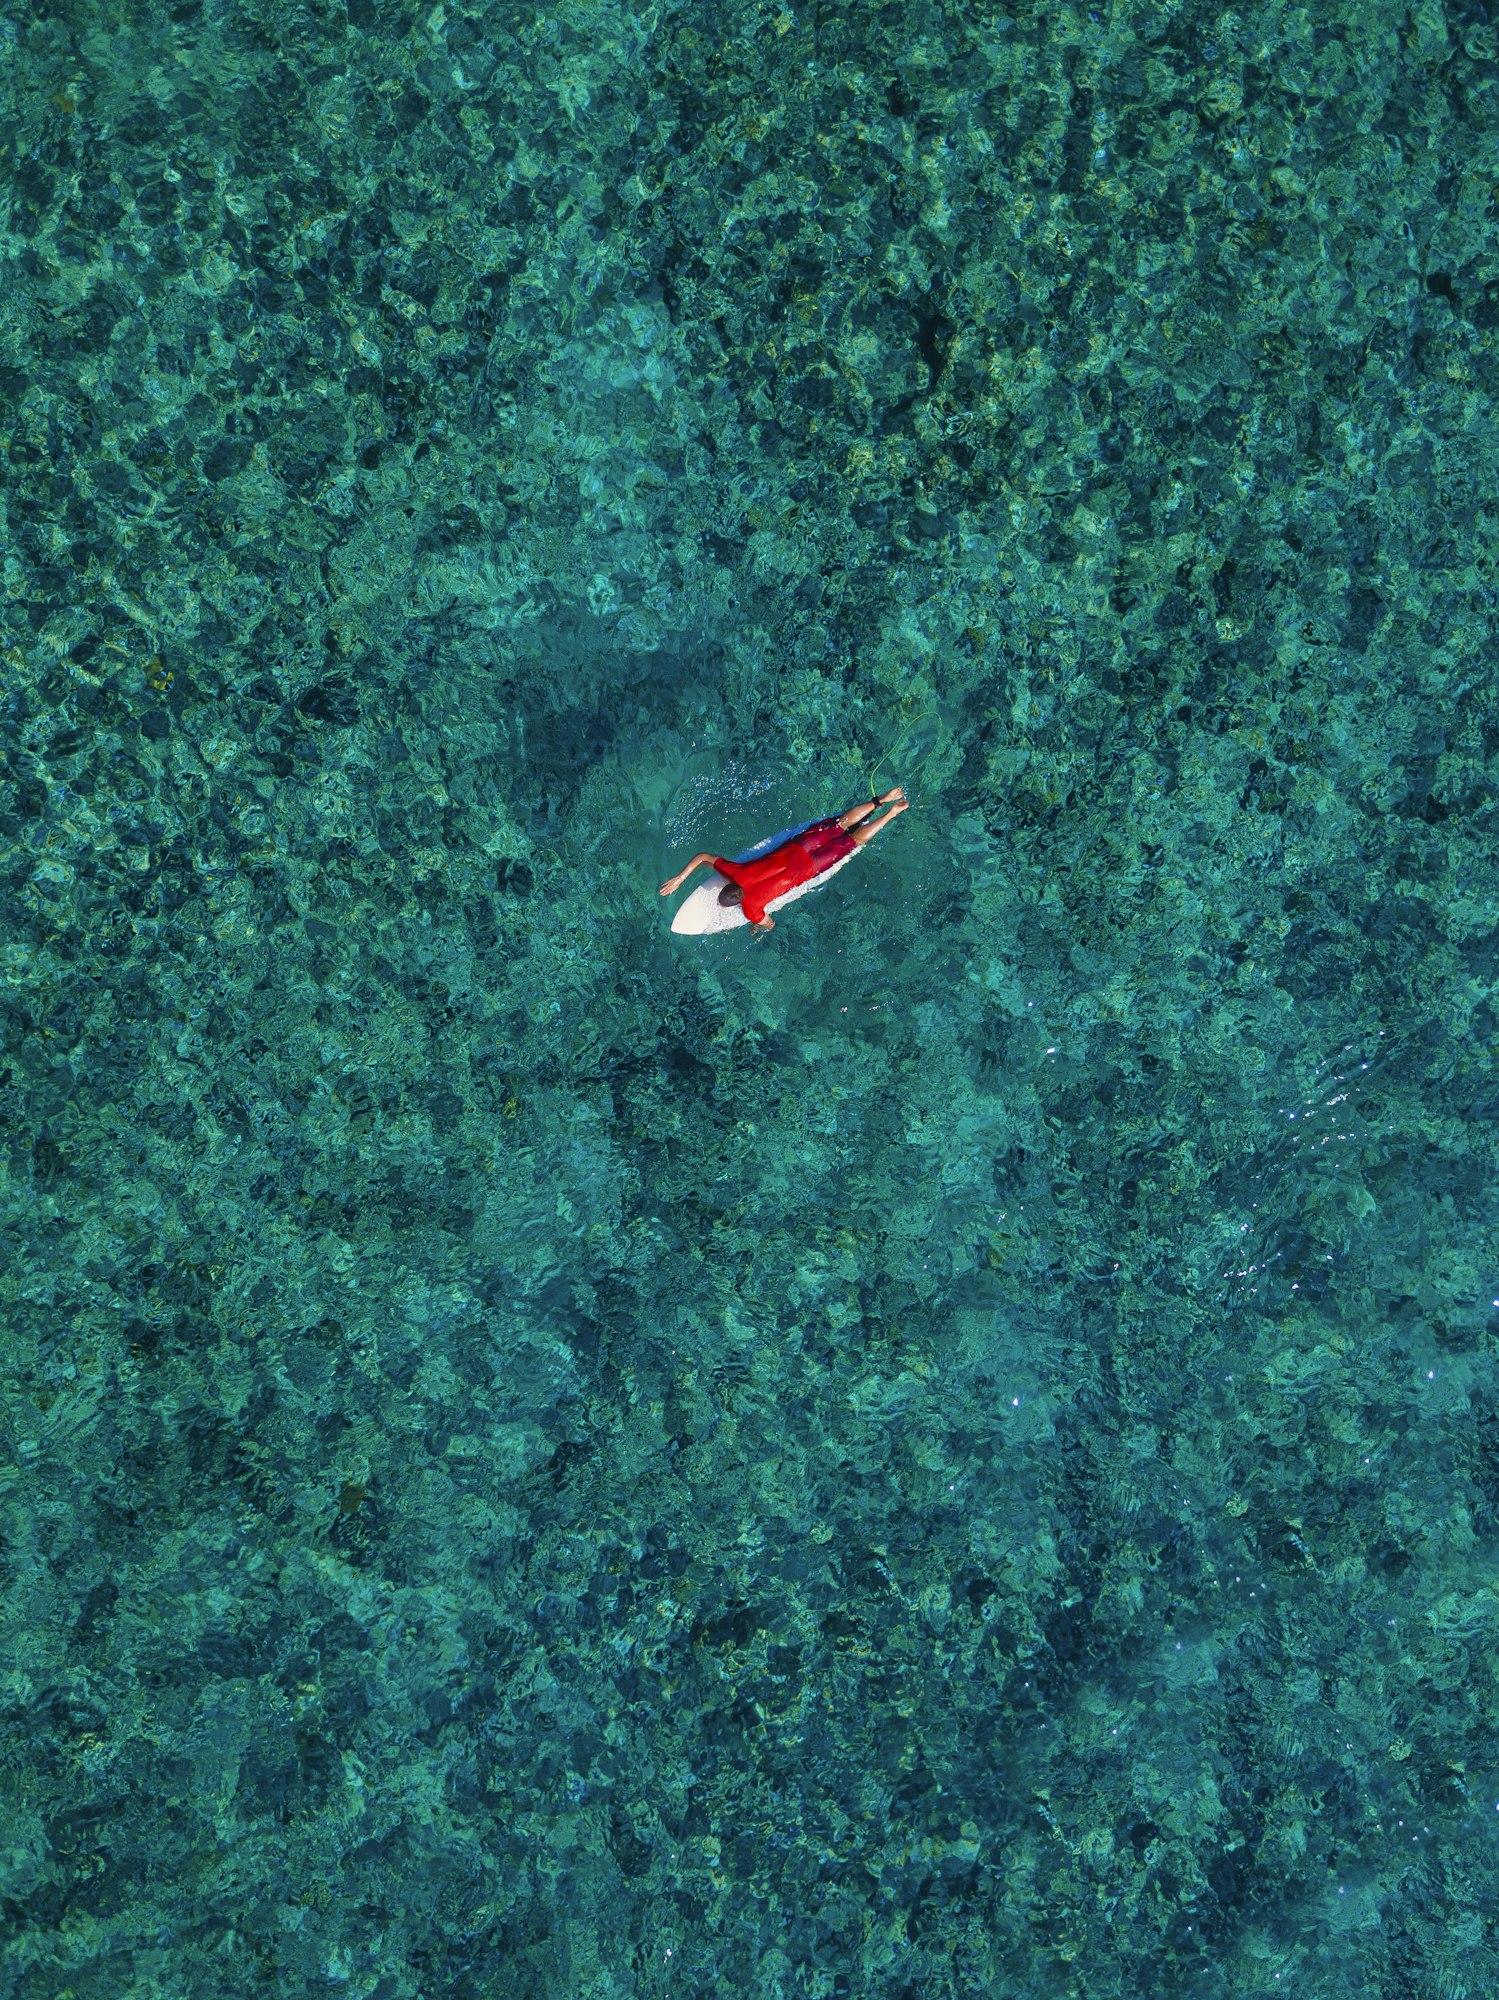 Aerial view of surfer in Indian Ocean